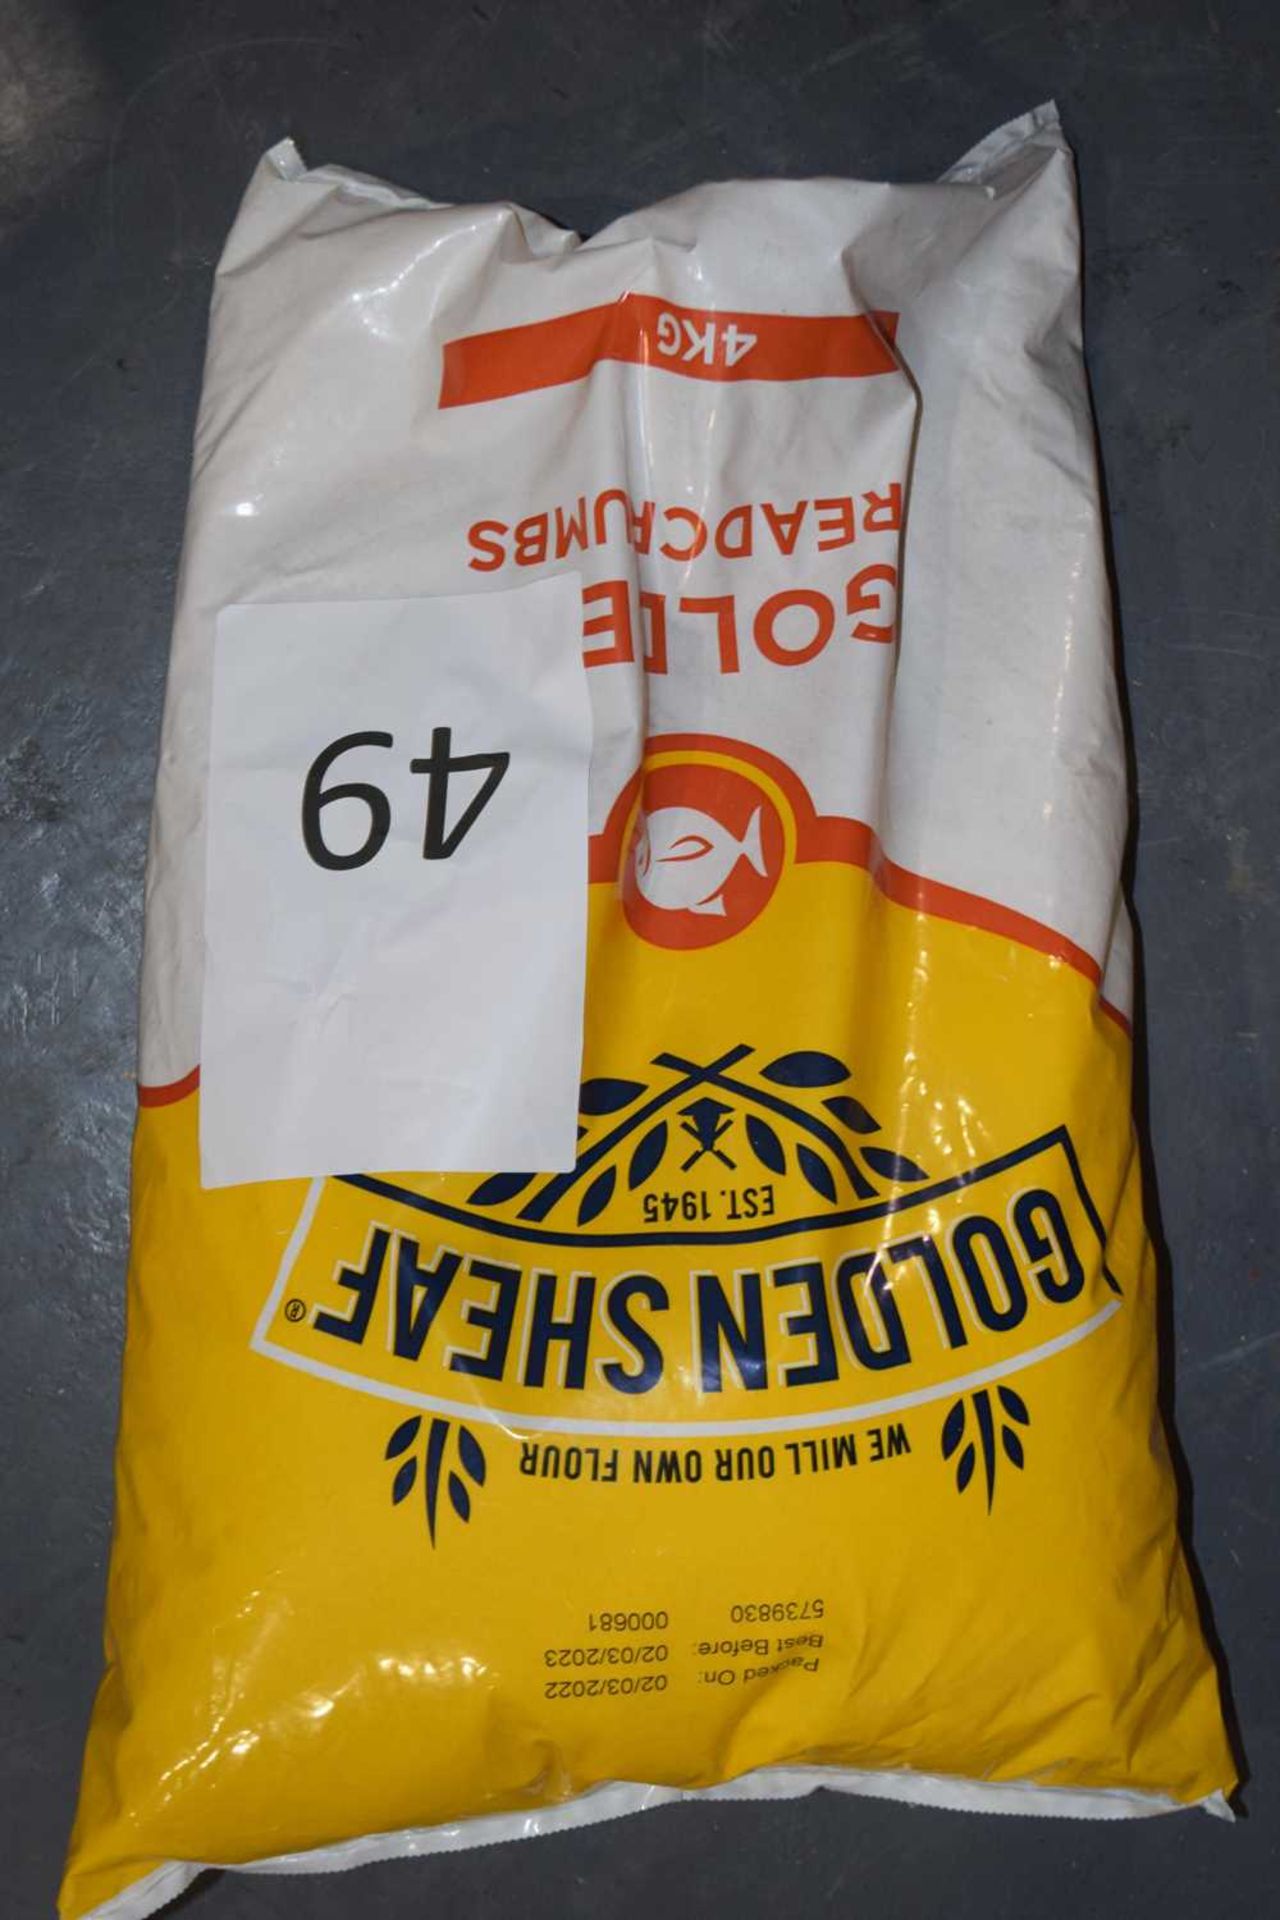 One 4kg bag of golden breadcrumbs by Golden Sheaf